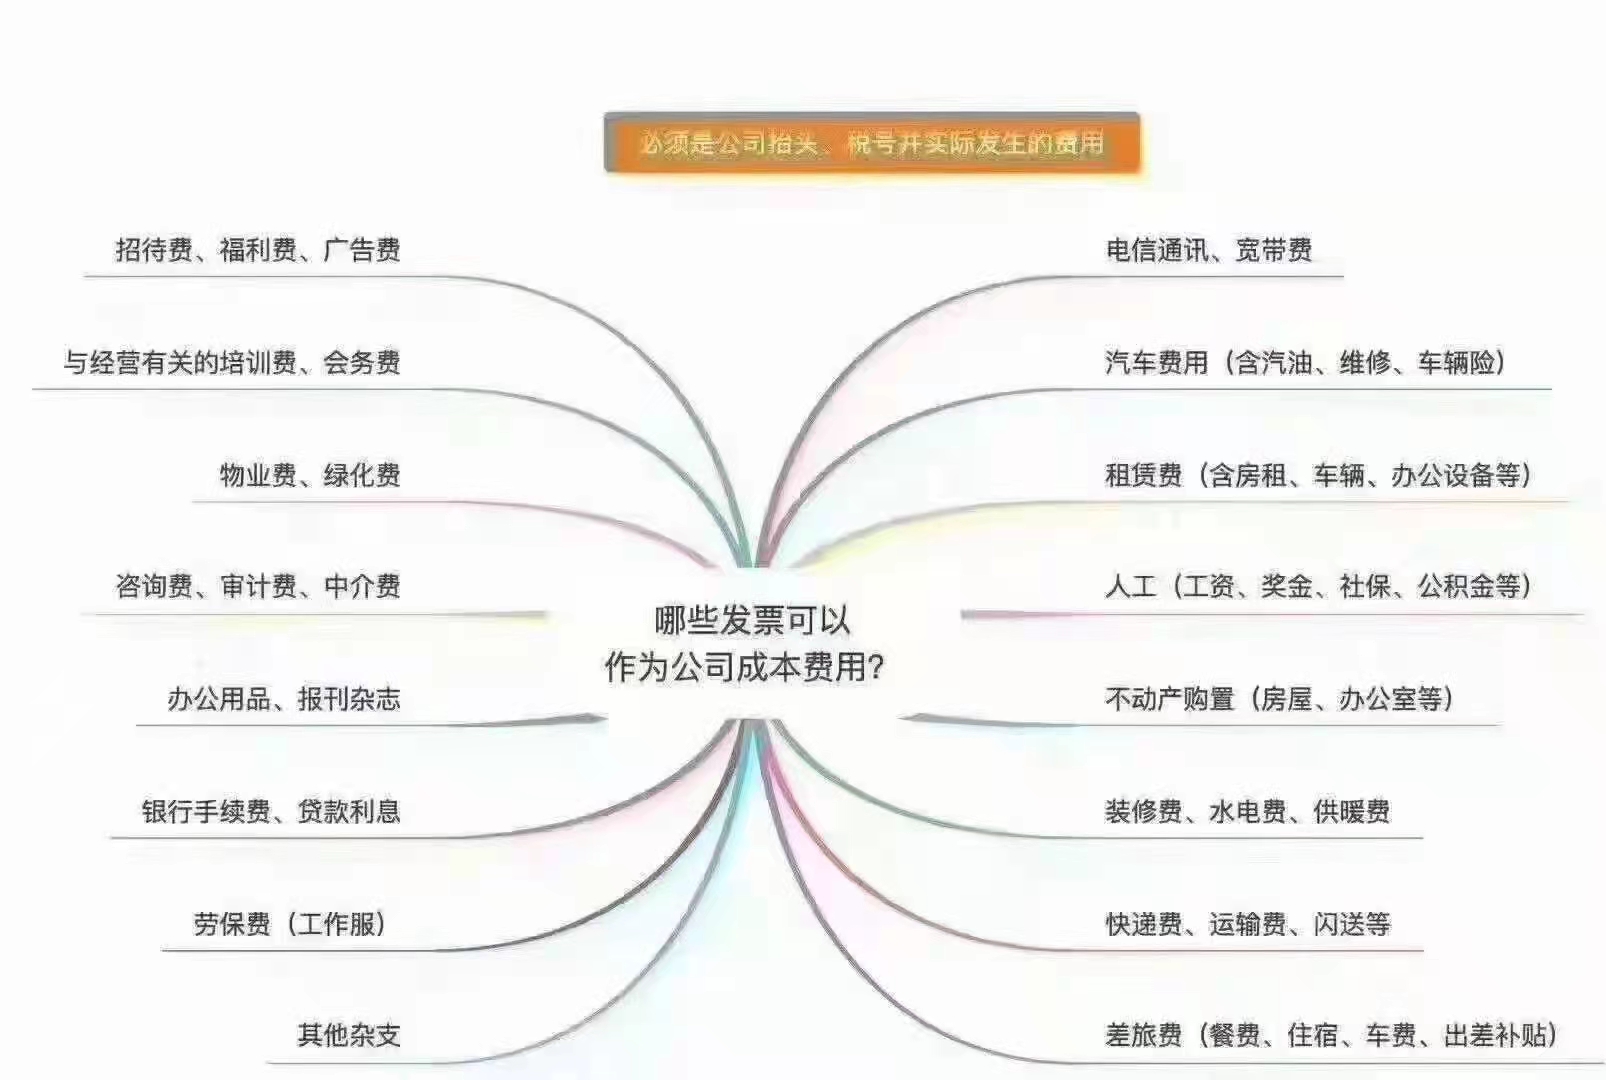 郑州开封研究院注册的流程和程序是什么